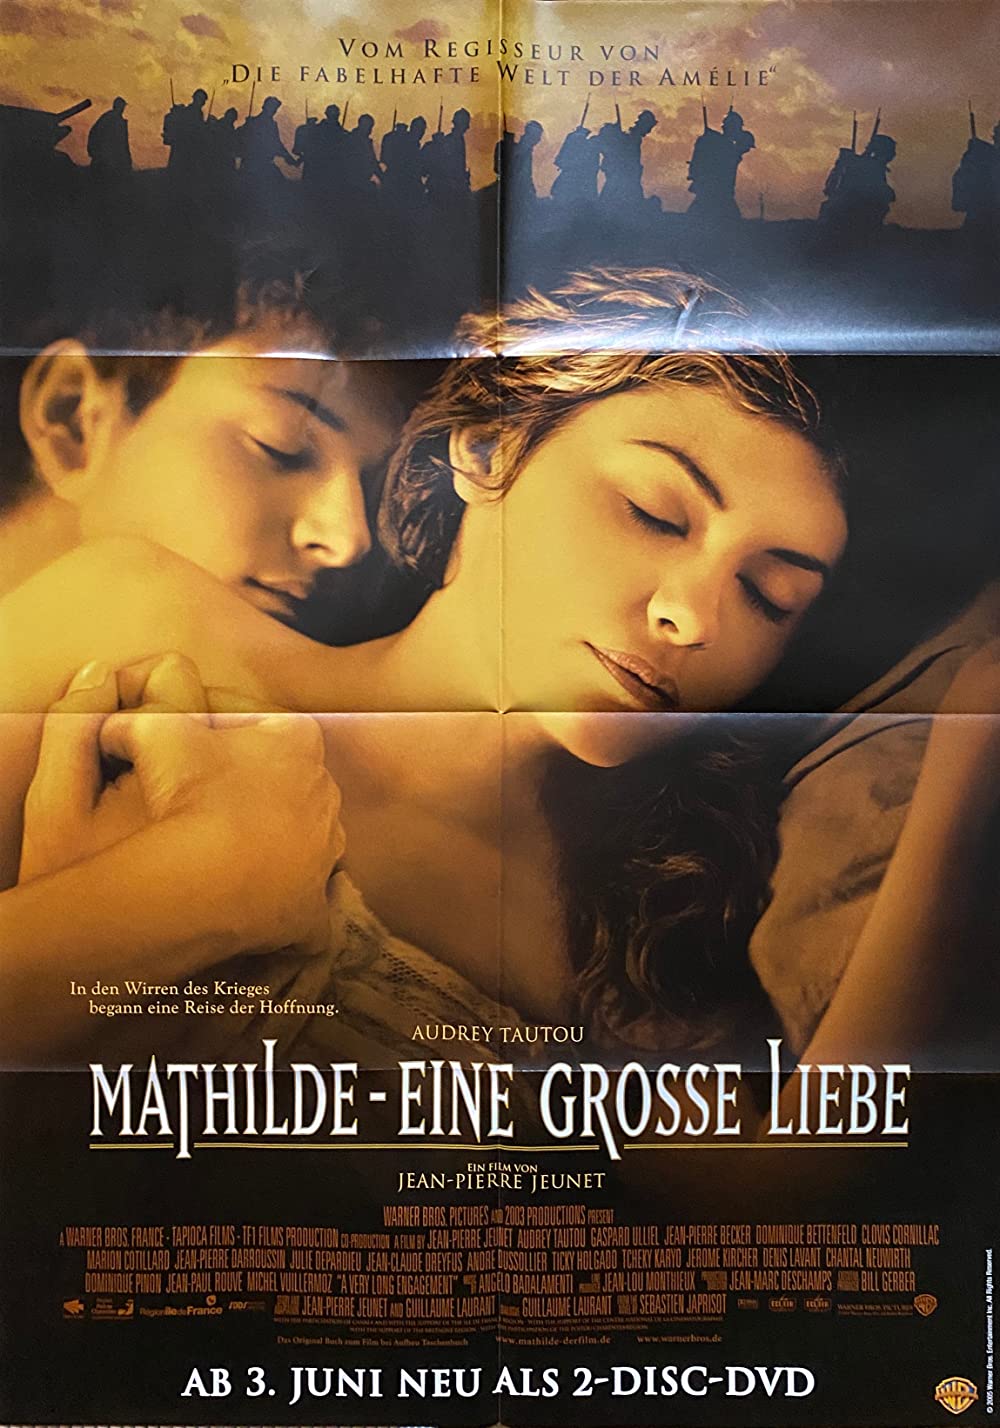 Filmbeschreibung zu Mathilde - Eine große Liebe